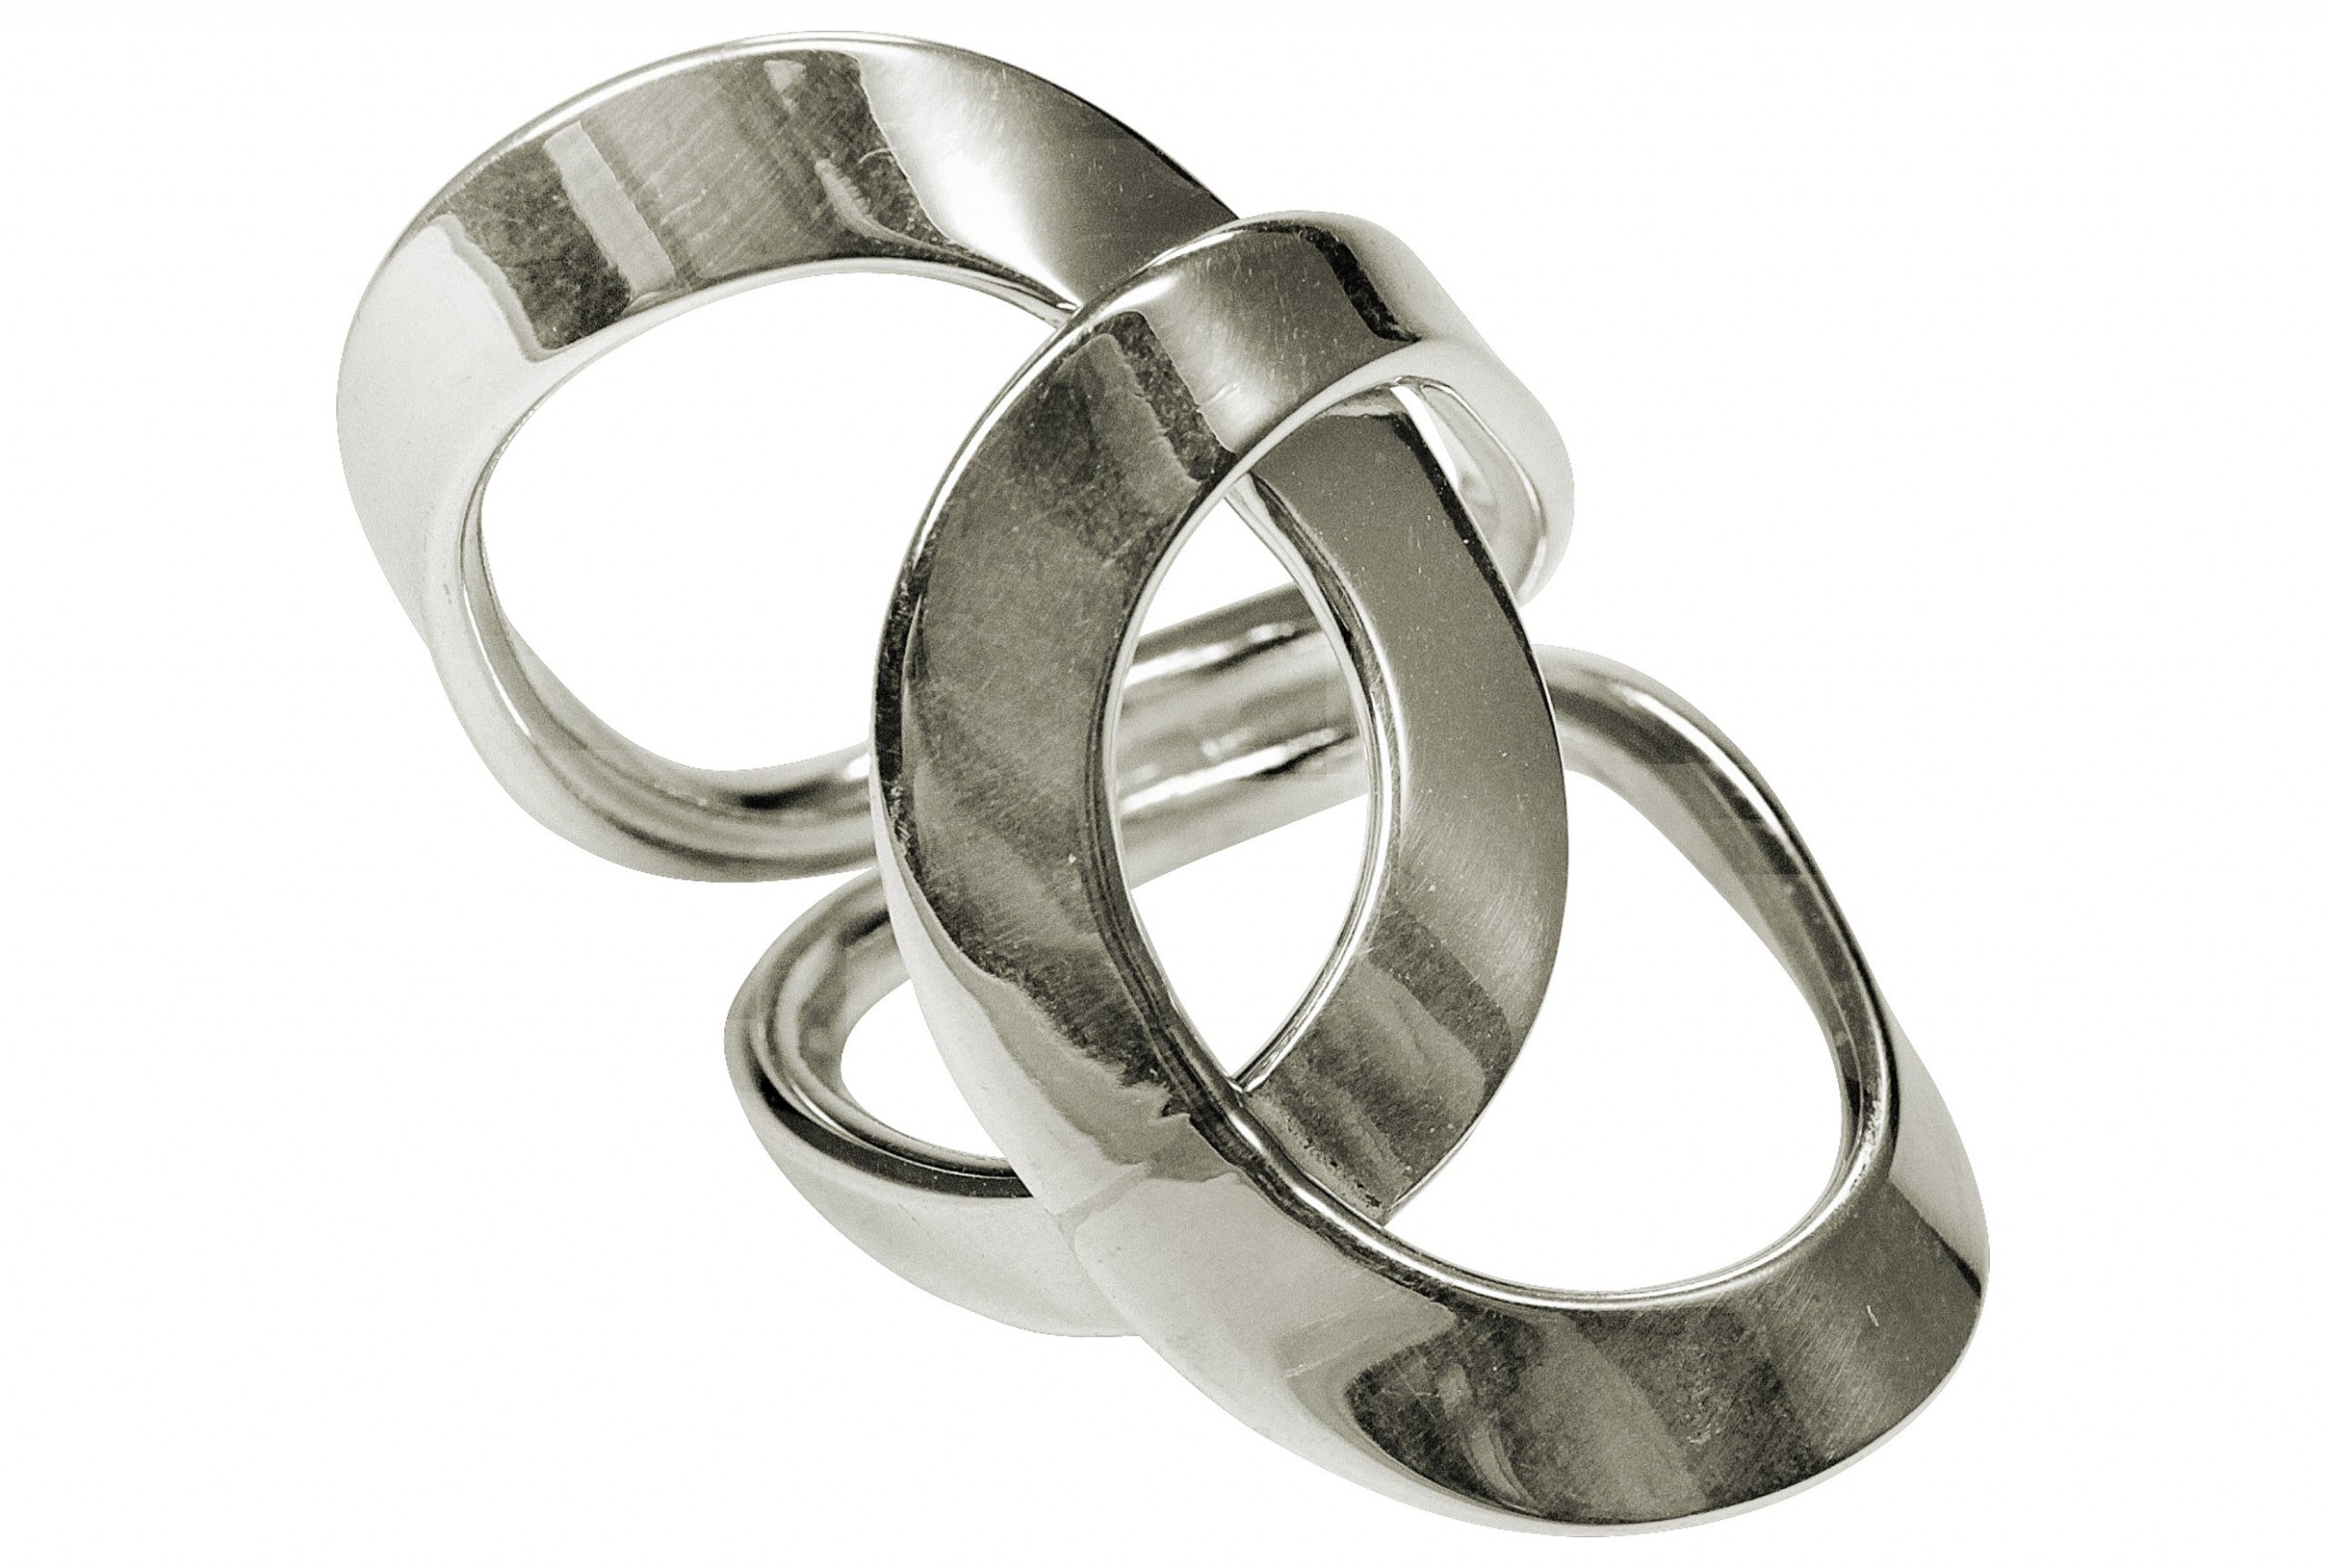 Geschmiedeter Damenring aus zwei Kreisen, die kunstvoll ineinander verschlungen sind. Der Ring ist geschmiedet und hat eine glänzende Oberfläche.